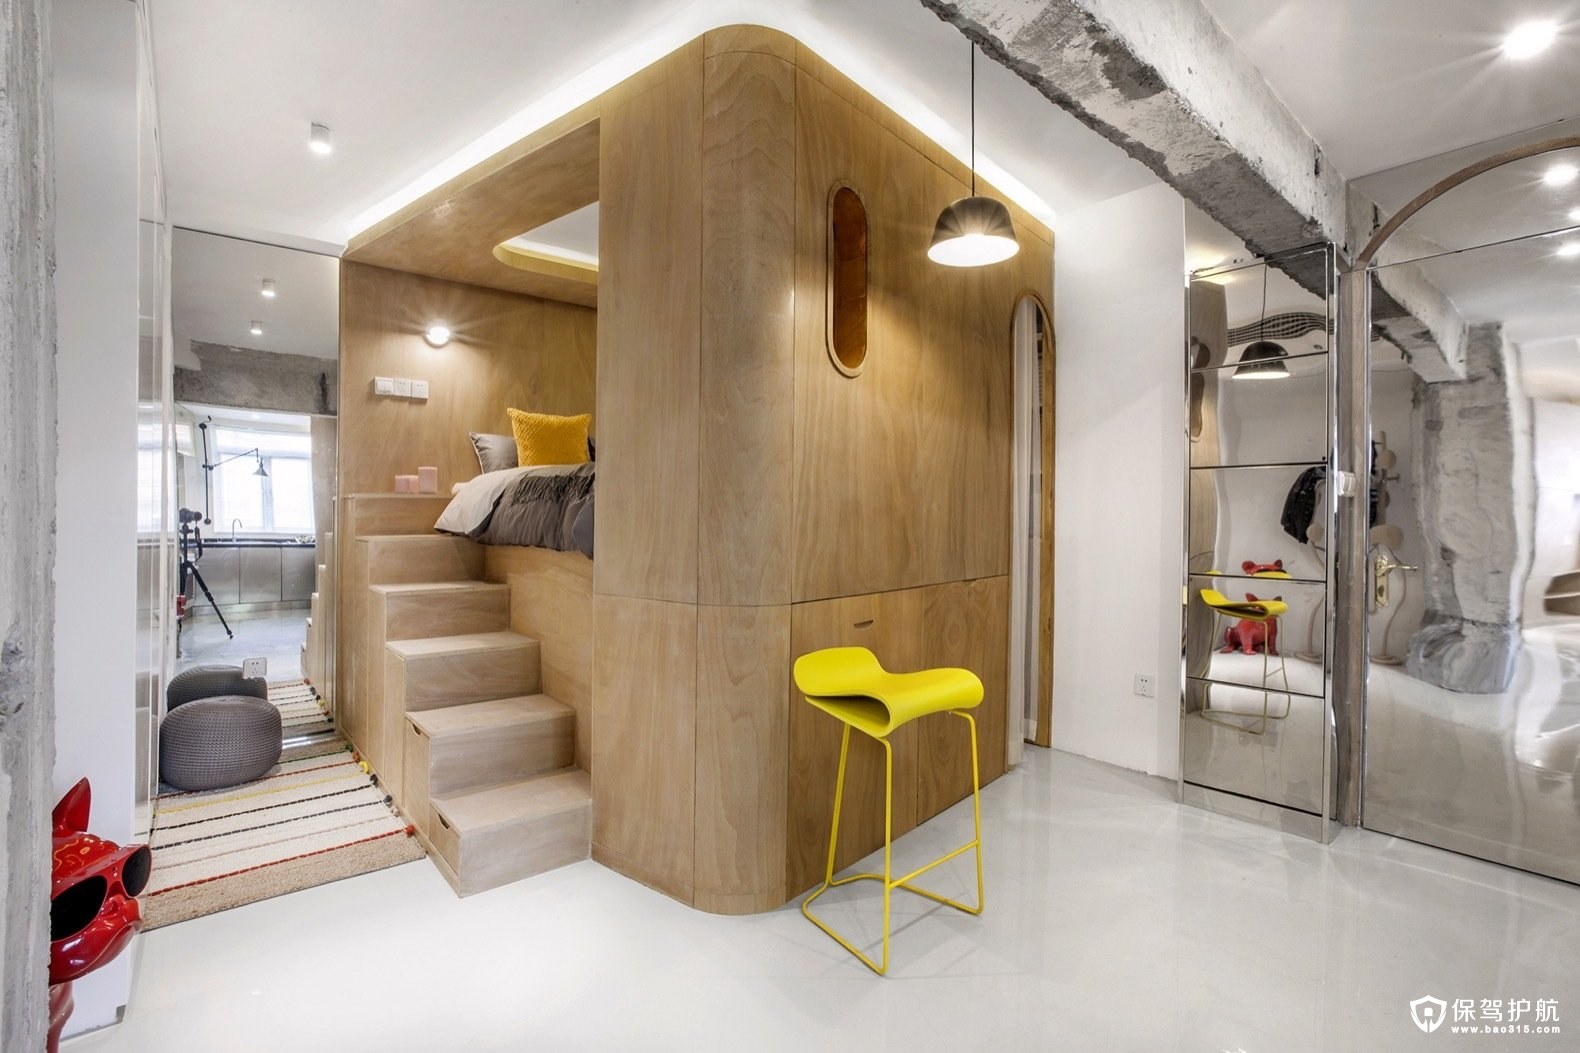 小公寓装修效果图用旋转的方式巧妙地最大化了空间